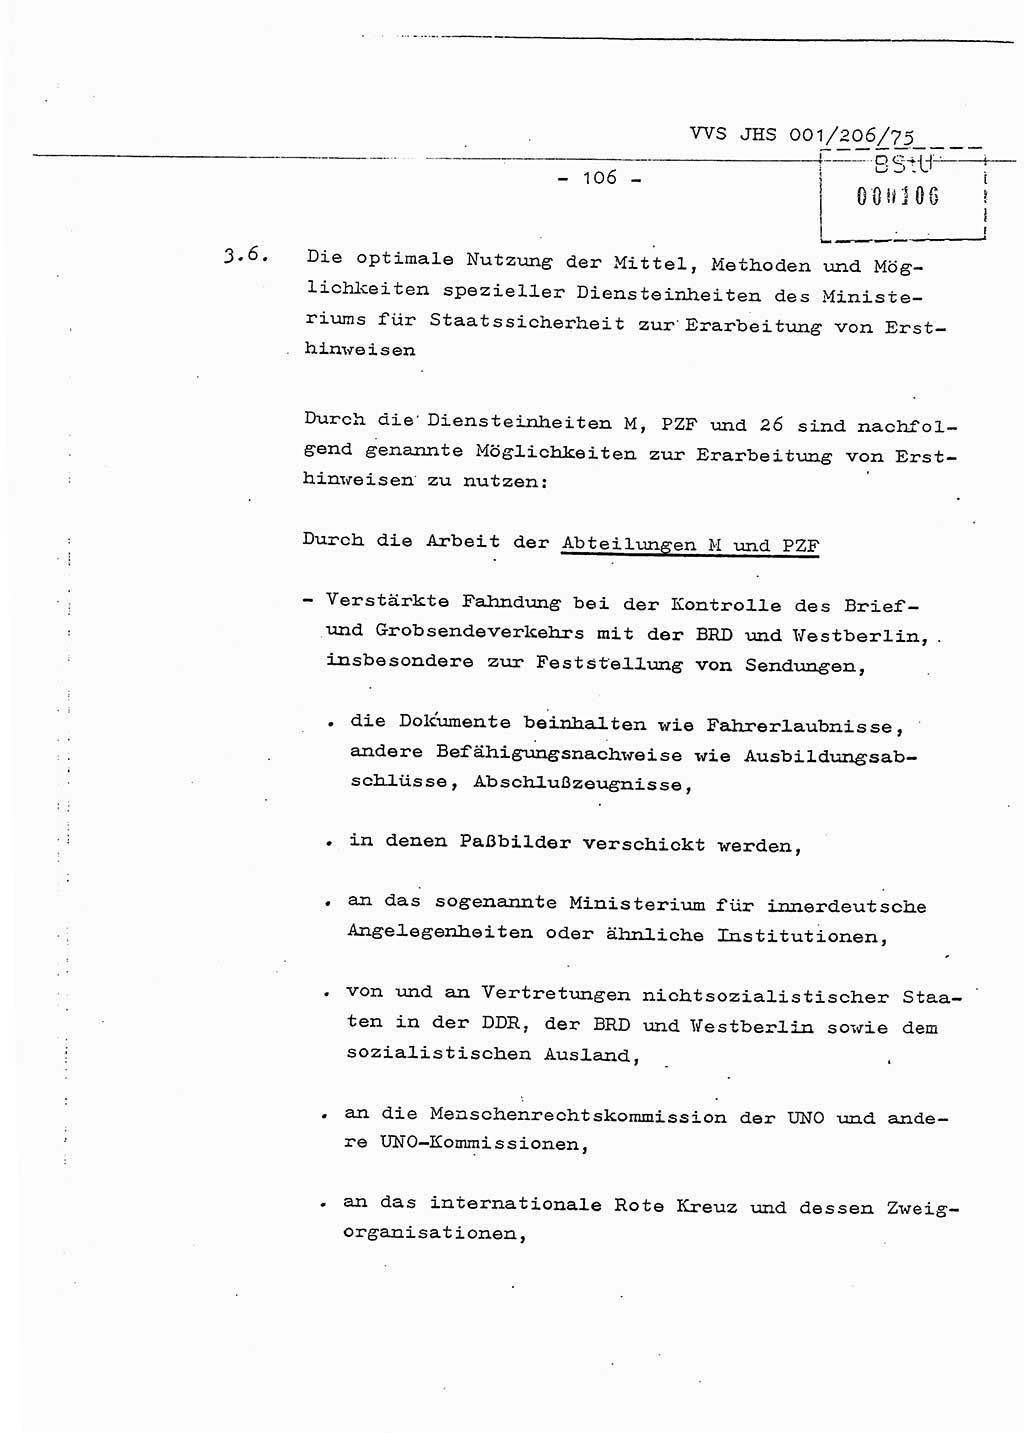 Dissertation Generalmajor Manfred Hummitzsch (Leiter der BV Leipzig), Generalmajor Heinz Fiedler (HA Ⅵ), Oberst Rolf Fister (HA Ⅸ), Ministerium für Staatssicherheit (MfS) [Deutsche Demokratische Republik (DDR)], Juristische Hochschule (JHS), Vertrauliche Verschlußsache (VVS) 001-206/75, Potsdam 1975, Seite 106 (Diss. MfS DDR JHS VVS 001-206/75 1975, S. 106)